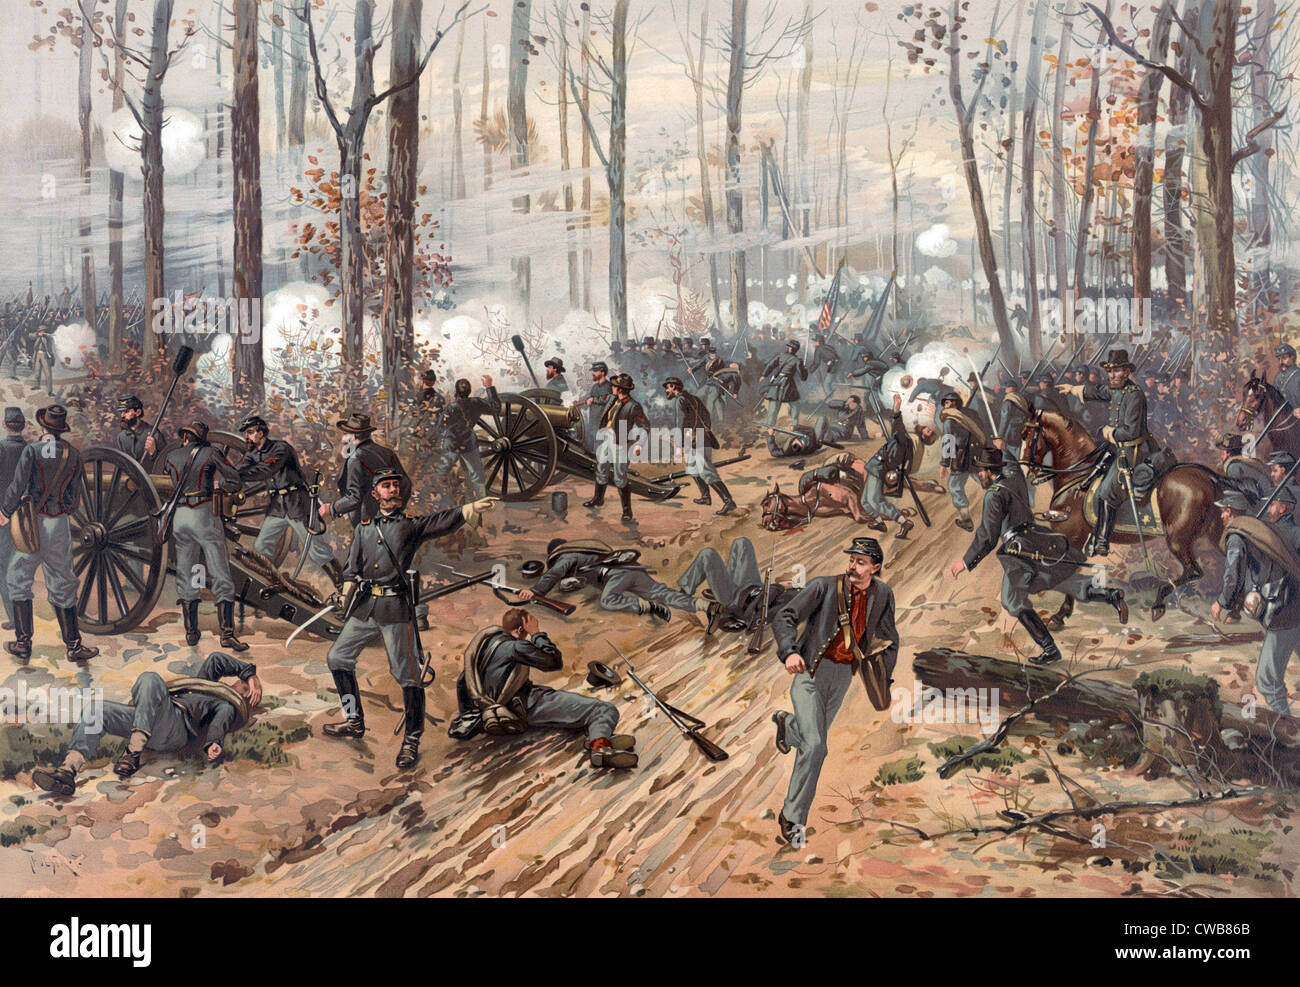 La guerre civile. La bataille de Shiloh. Chromolithographie par Thulstrup de Thure, 1888 Banque D'Images